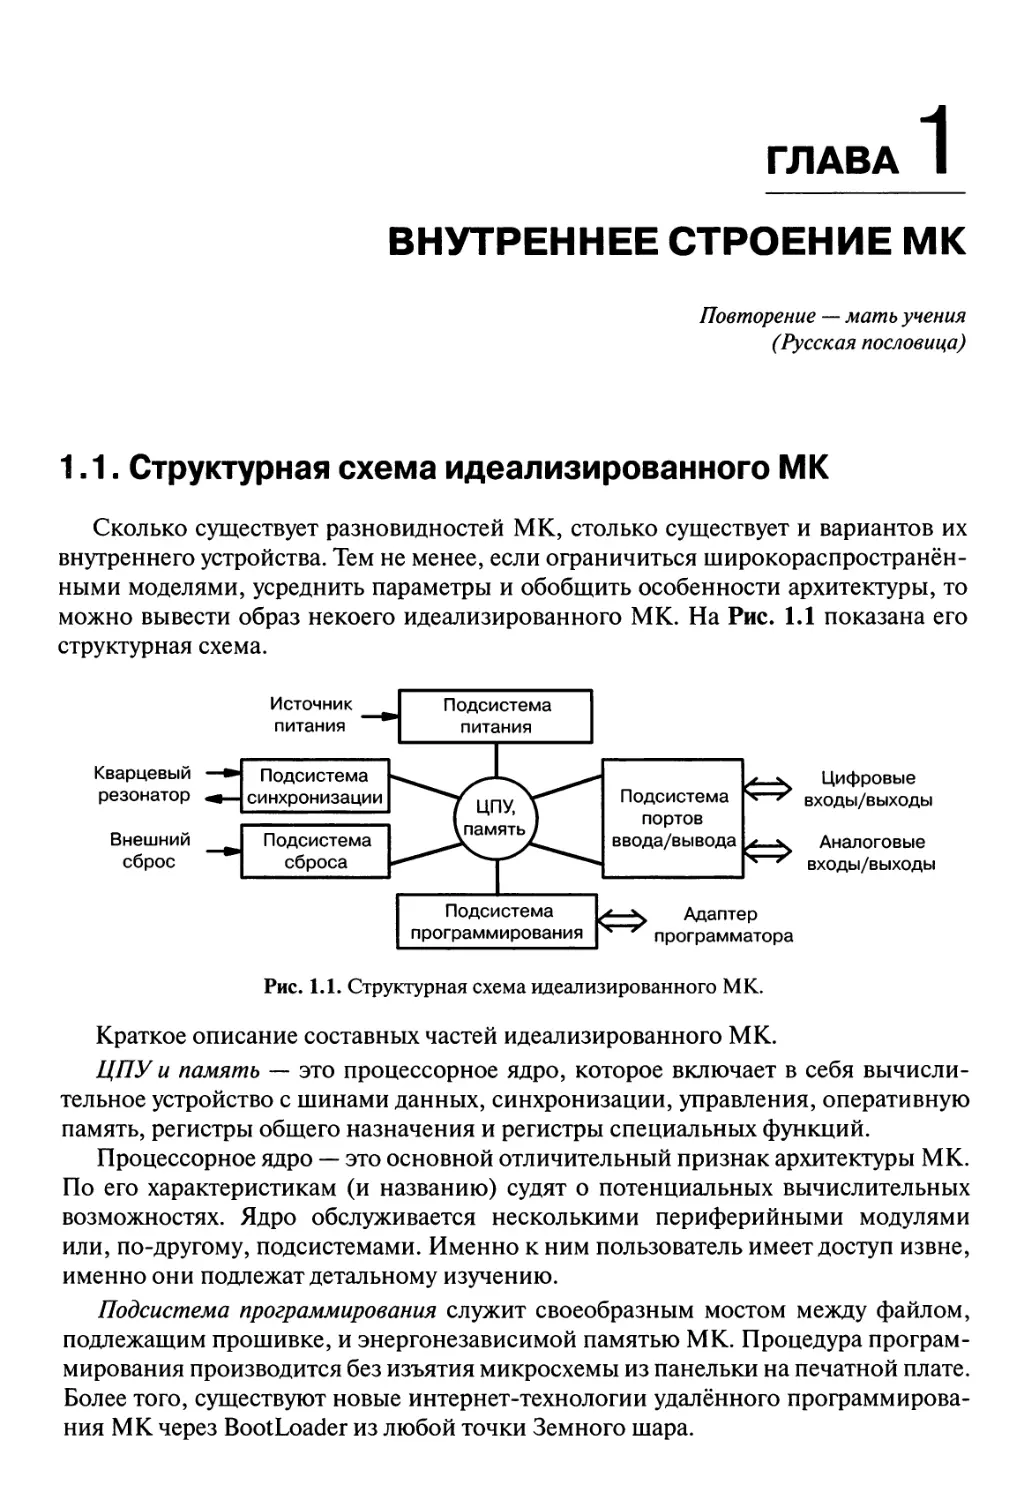 Глава 1. Внутреннее строение МК
1.1. Структурная схема идеализированного МК